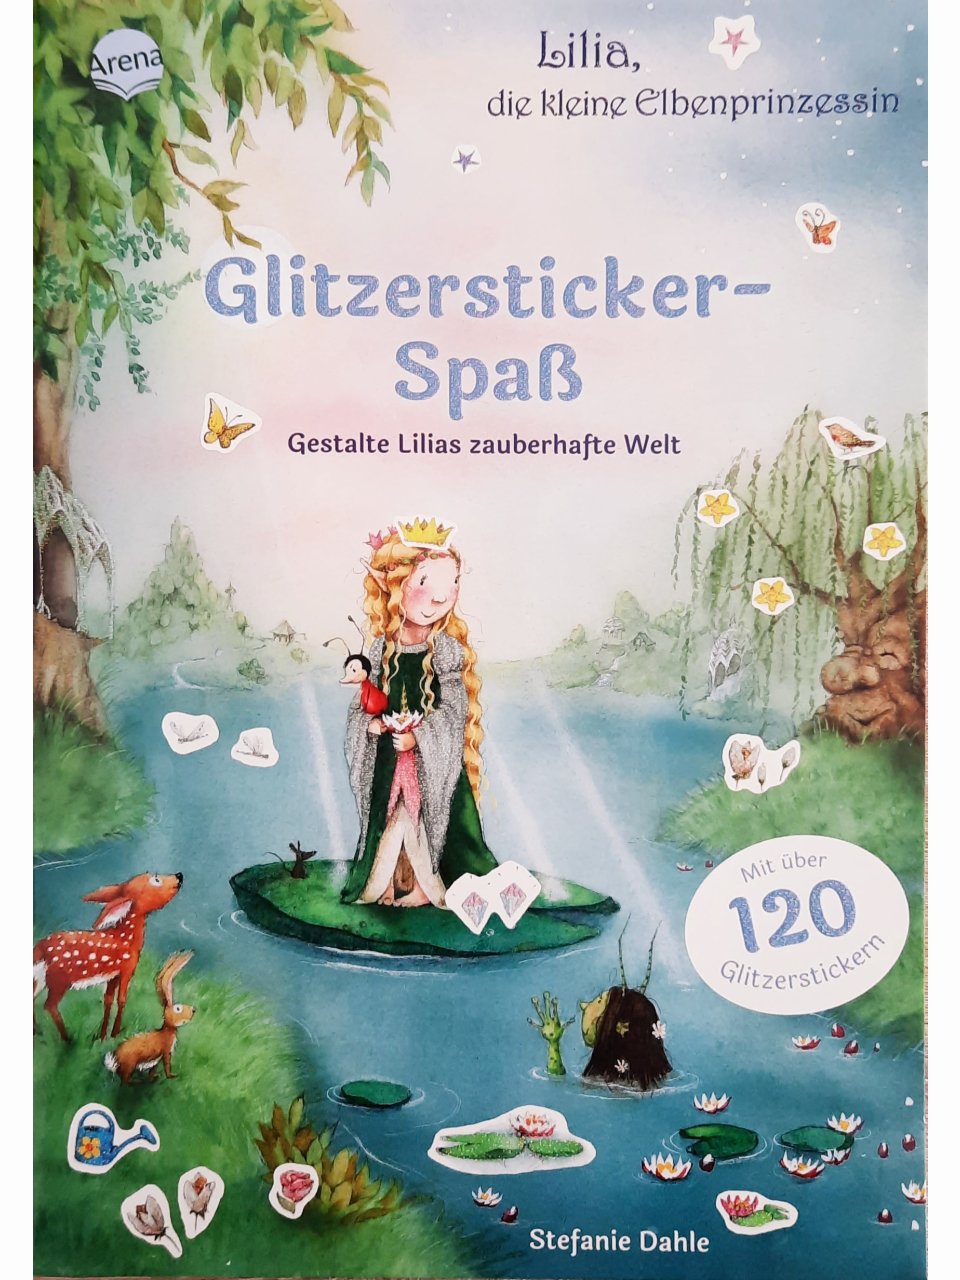 Lilia, die kleine Elbenprinzessin – Glitzersticker-Spaß